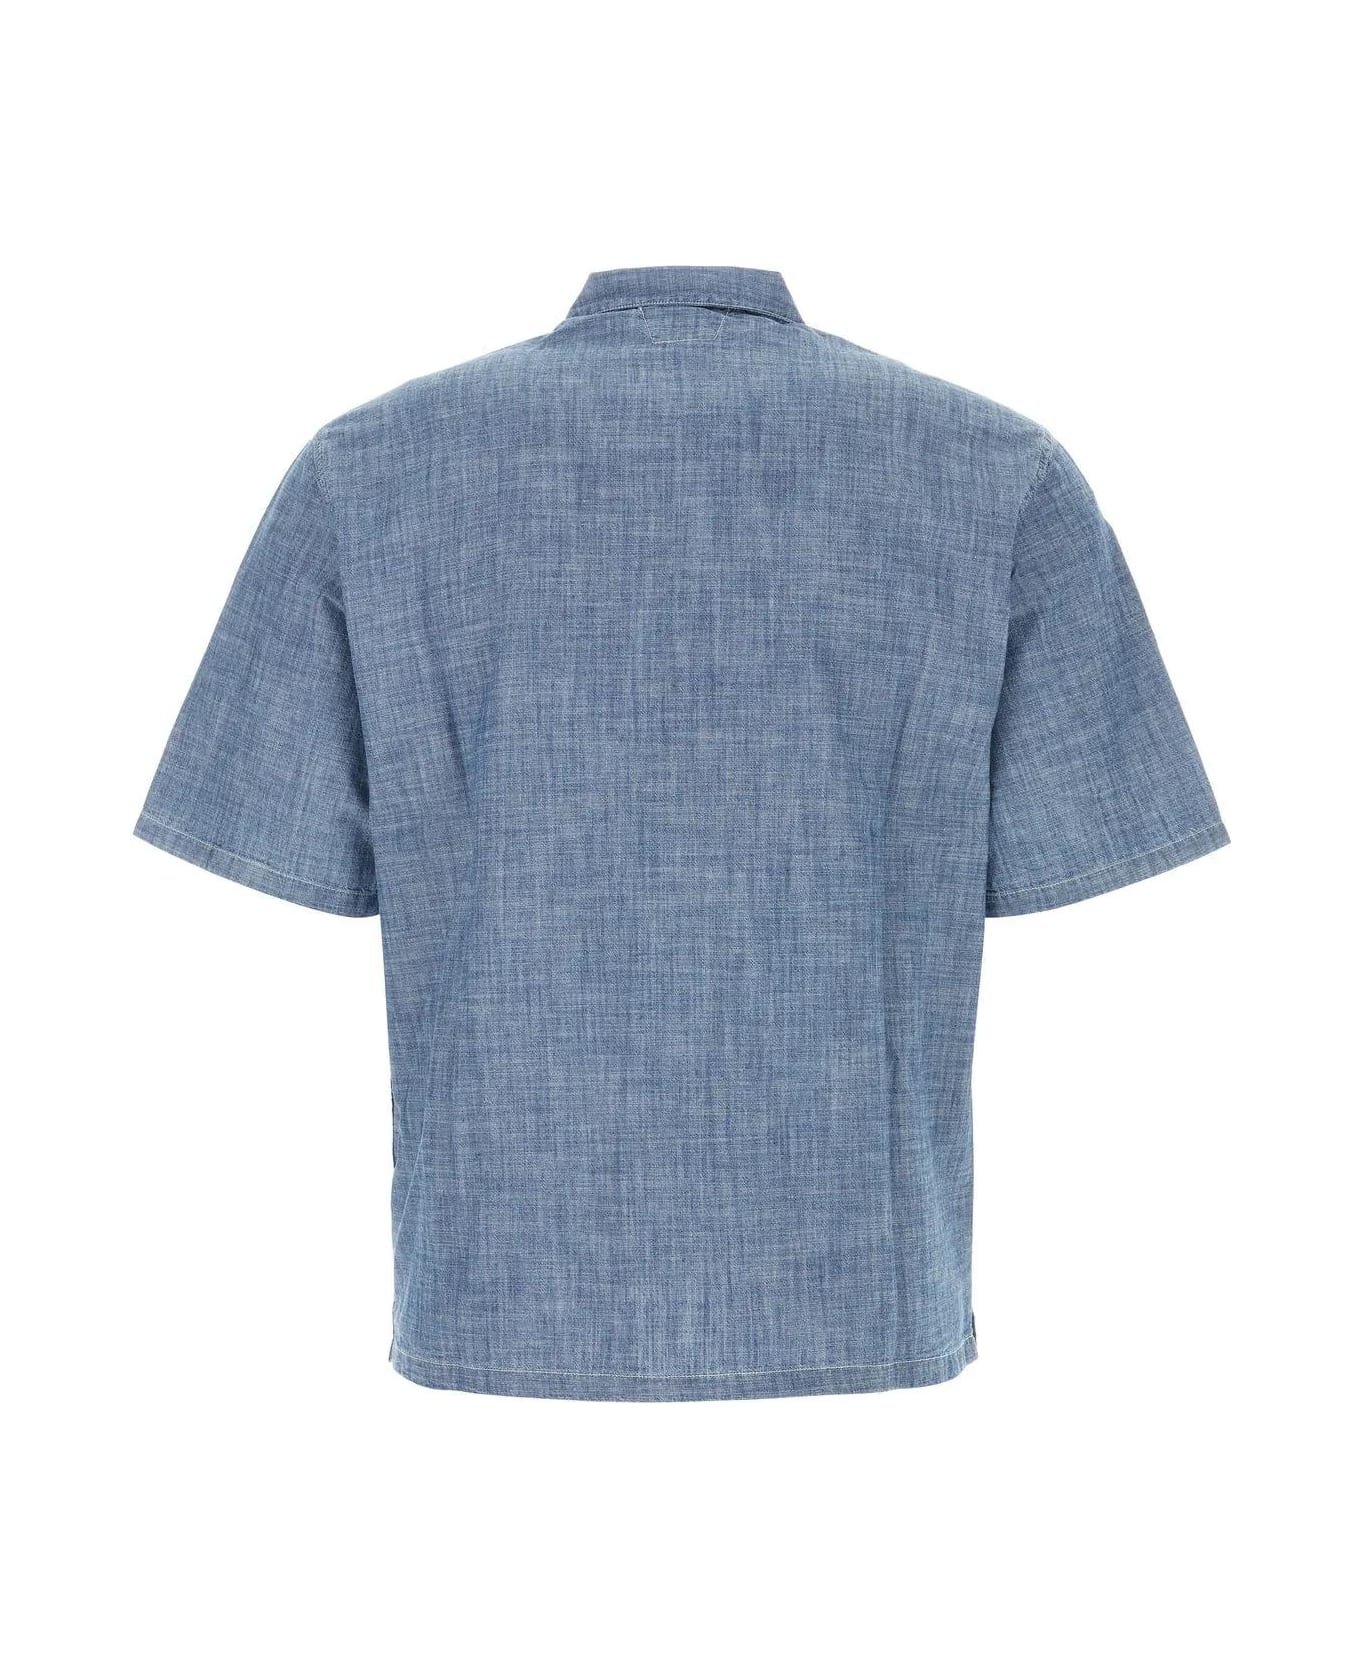 C.P. Company Denim Shirt - Stone Bleach